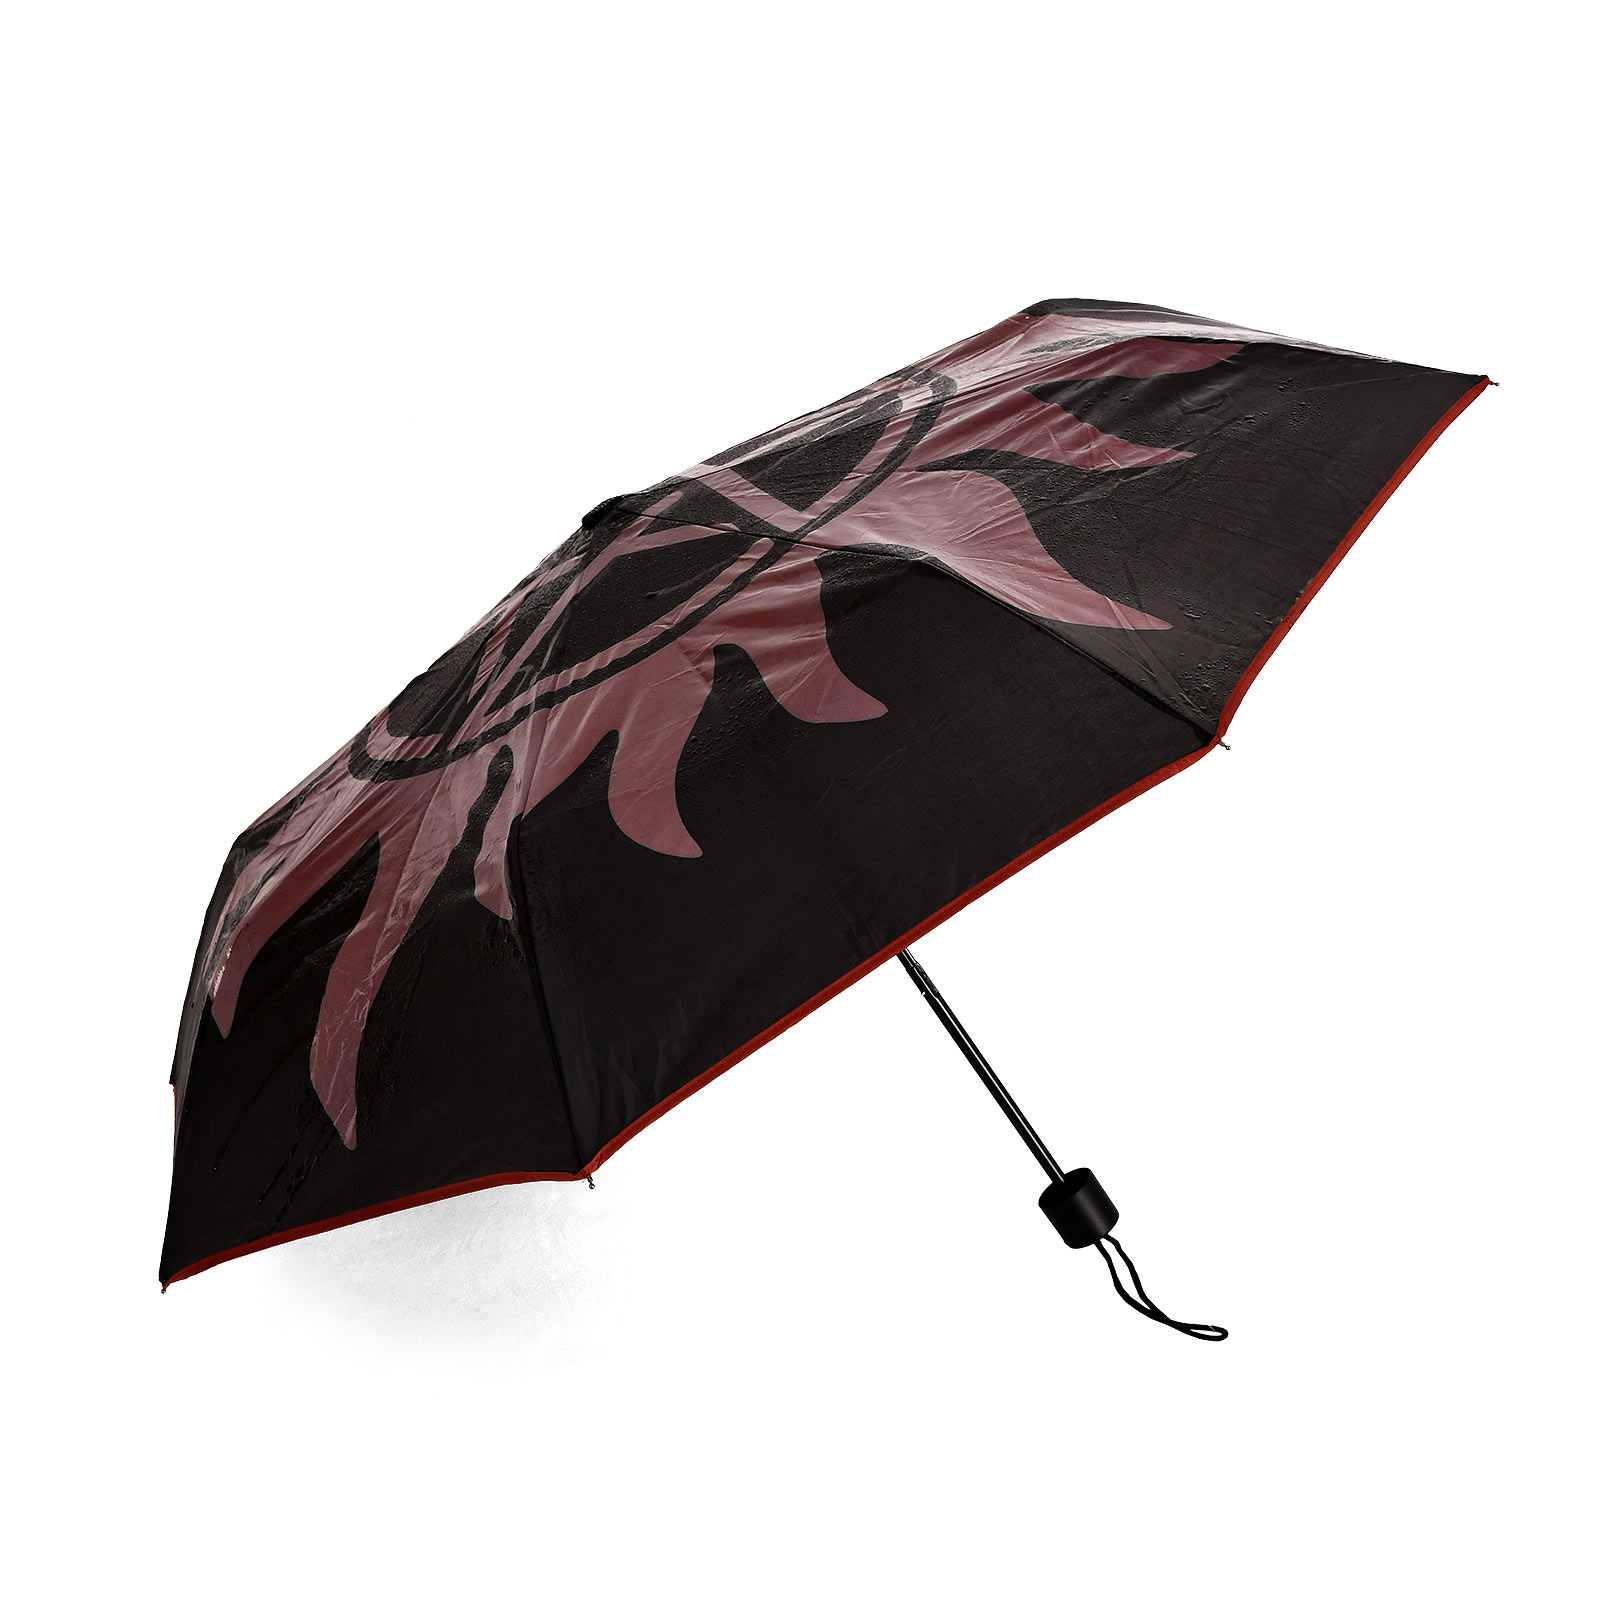 Supernatural - Anti Possession Symbol Umbrella with Aqua Effect